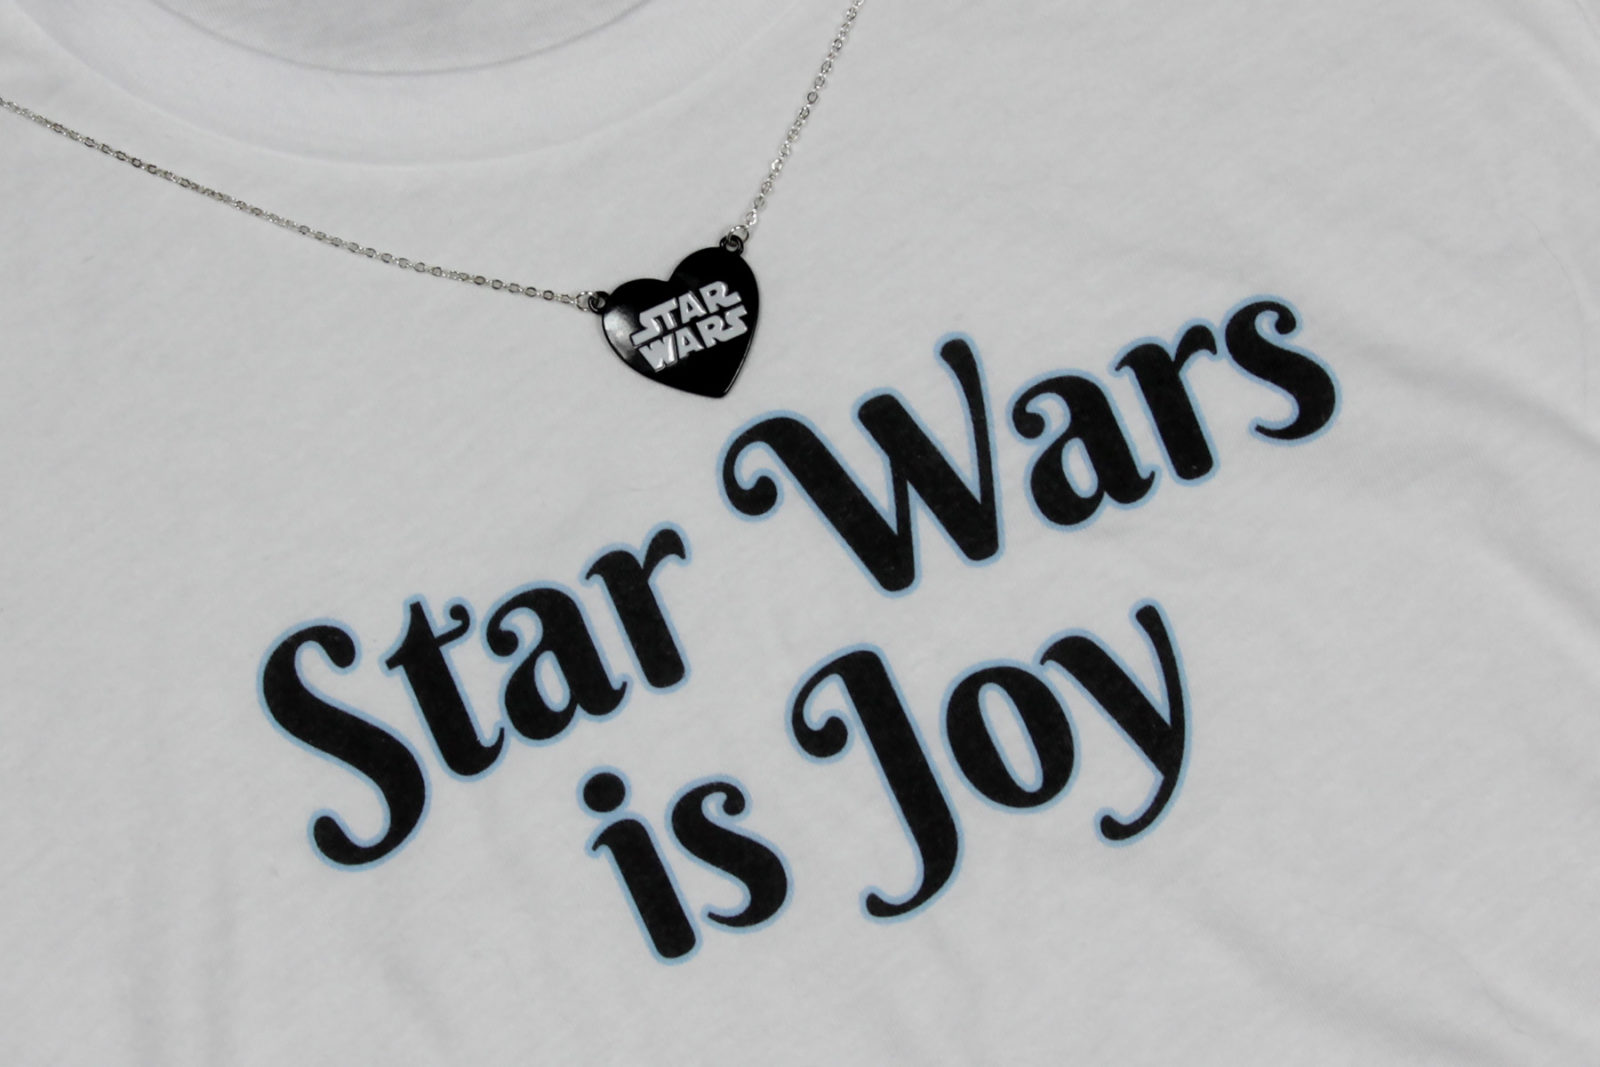 Star Wars is Joy